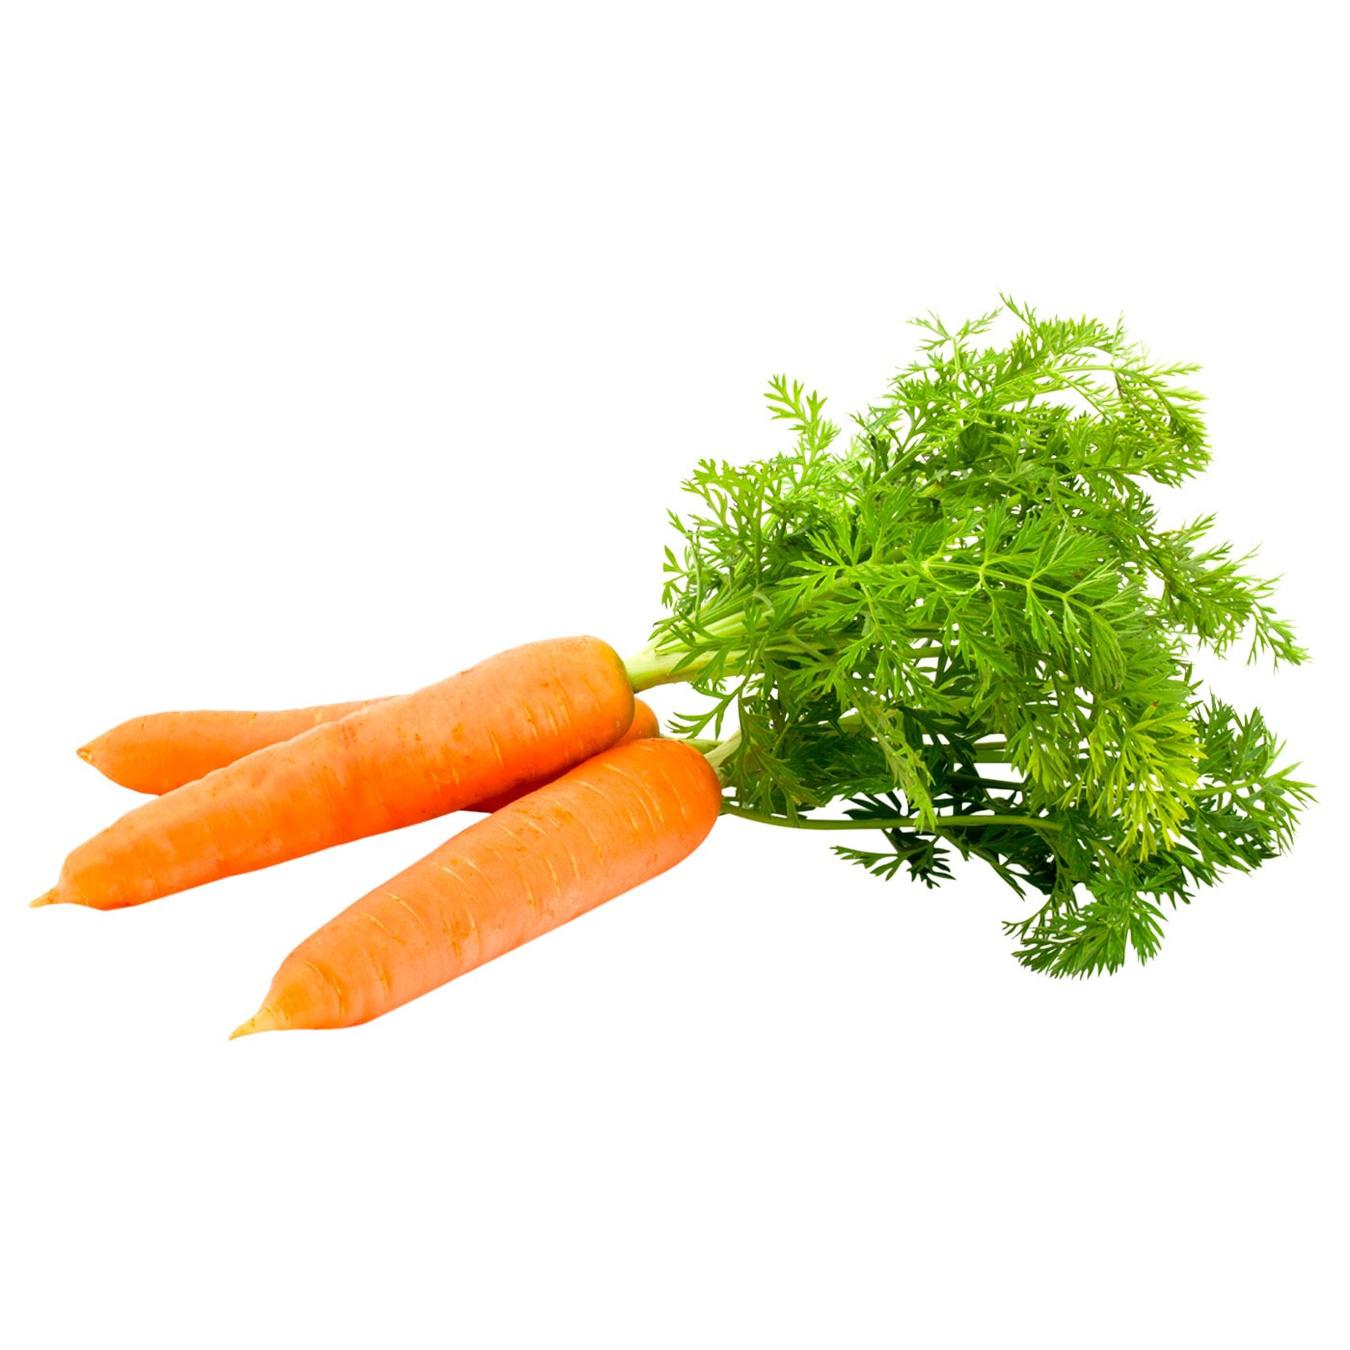 Морковь в пучках. Пучок морковки. Пучки морковки для детей. Пучка морковь 6 штук. Свяжи морковки в пучки